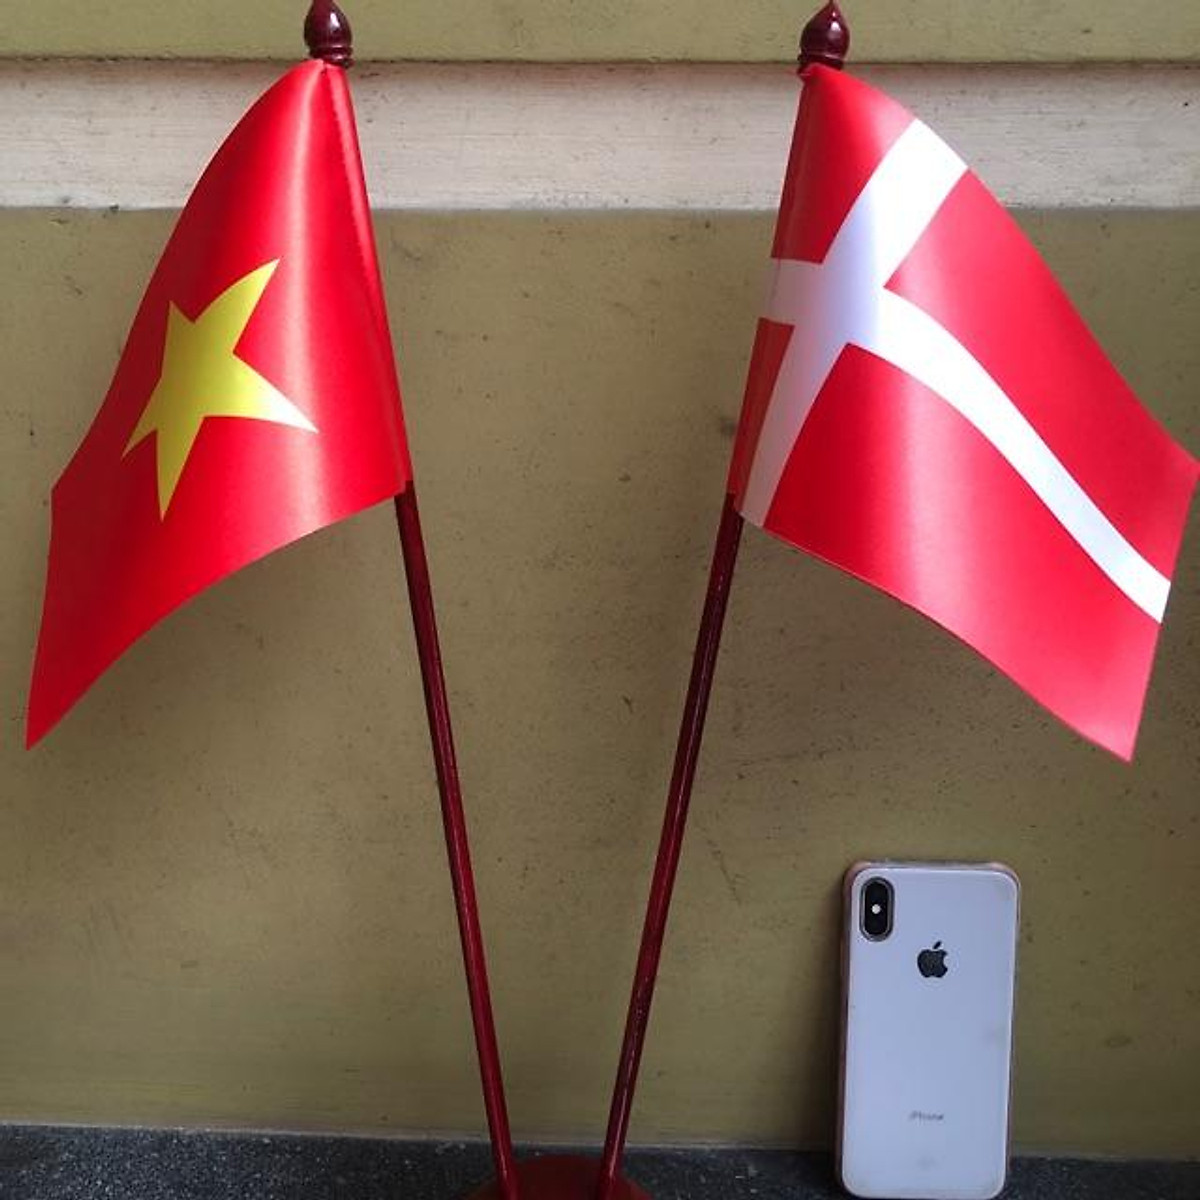 Cờ để bàn Việt Nam Đan Mạch là sản phẩm mới nhất trong bộ sưu tập cờ để bàn trang trí. Hình ảnh chiếc cờ hiện diện thành một biểu tượng của sự hòa quyện giữa hai nền văn hoá khác nhau. Đây là một món quà tuyệt vời để tặng cho những người yêu thích phong cách trang trí và dành cho những gia đình đang sống tại Việt Nam hoặc Đan Mạch.